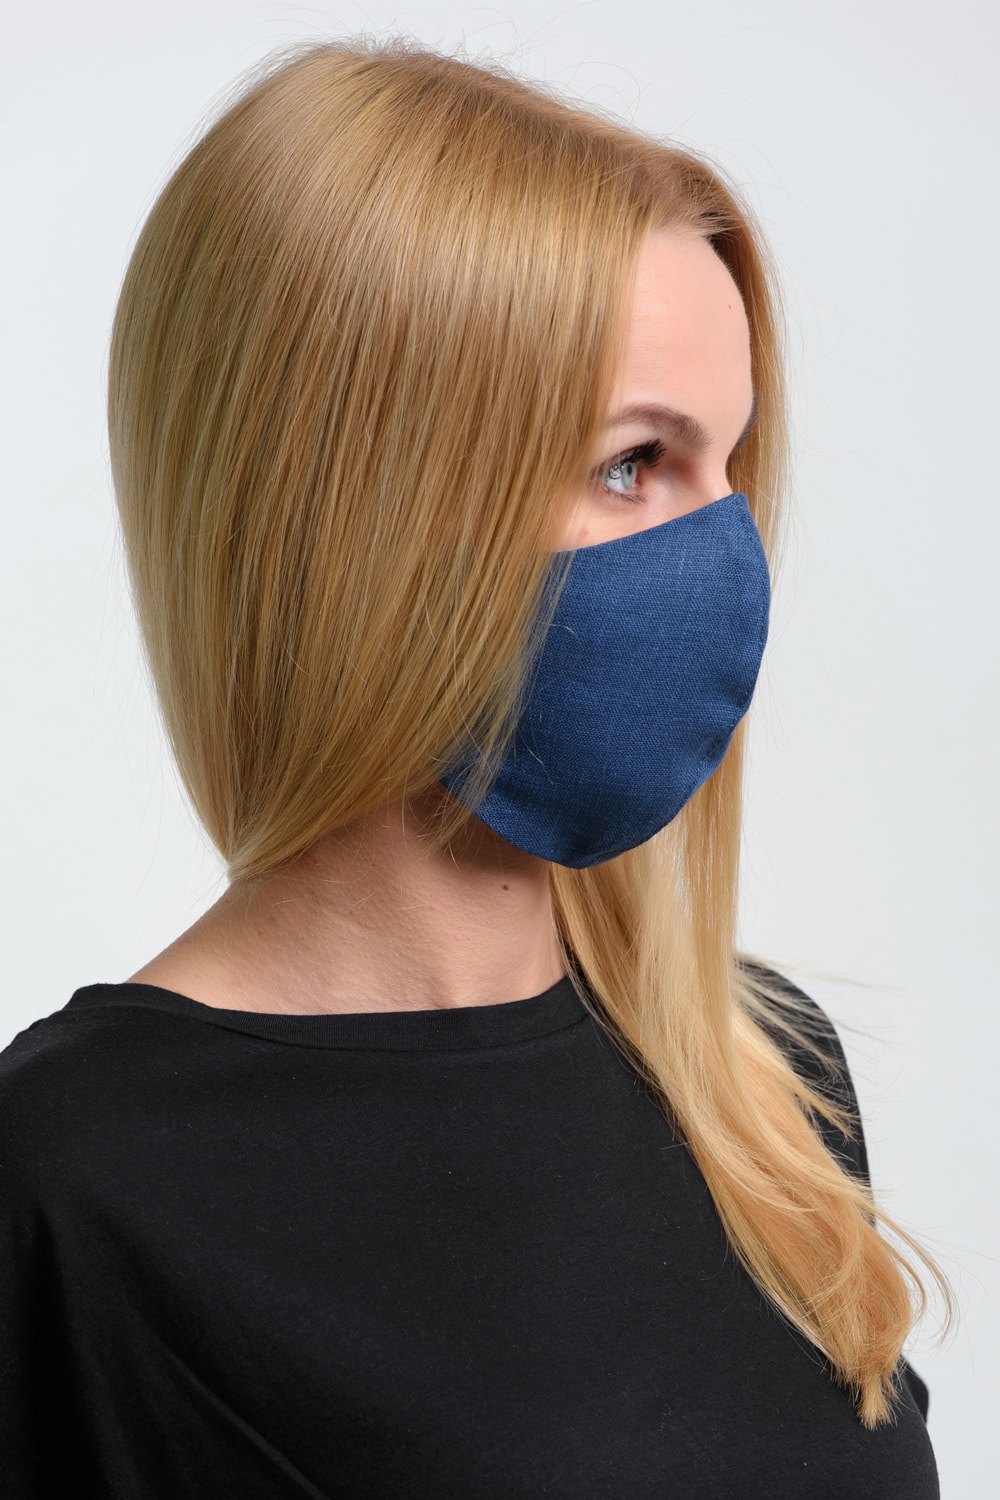 Женская маска для лица многоразовая модель Ж514